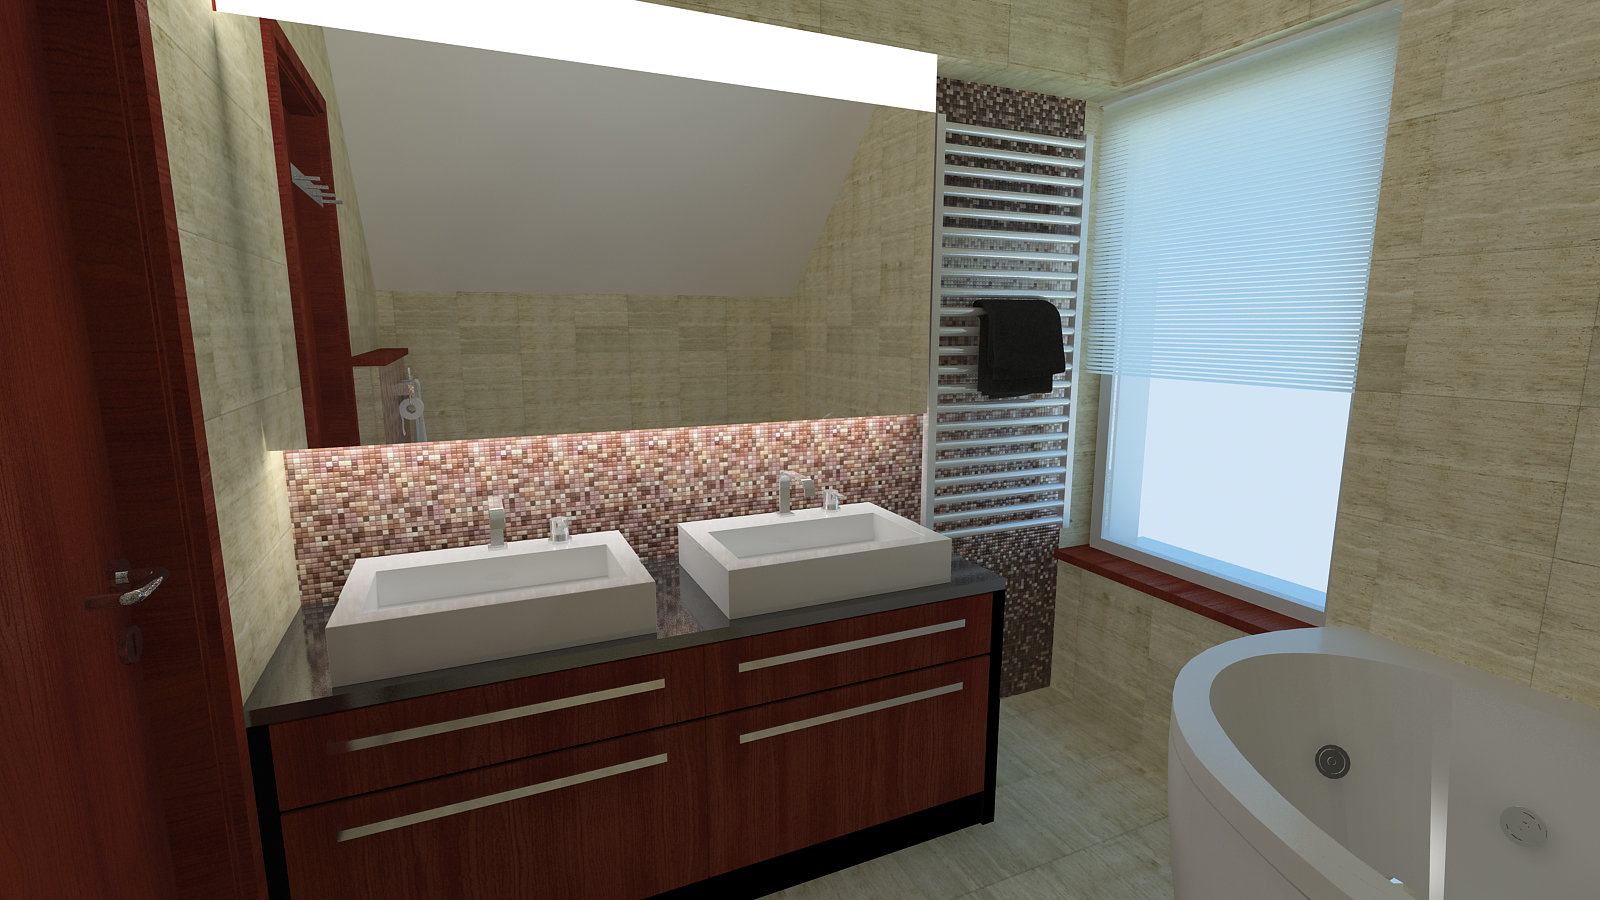 Fürdőszoba látványterv / Bathroom - architectural visualisation